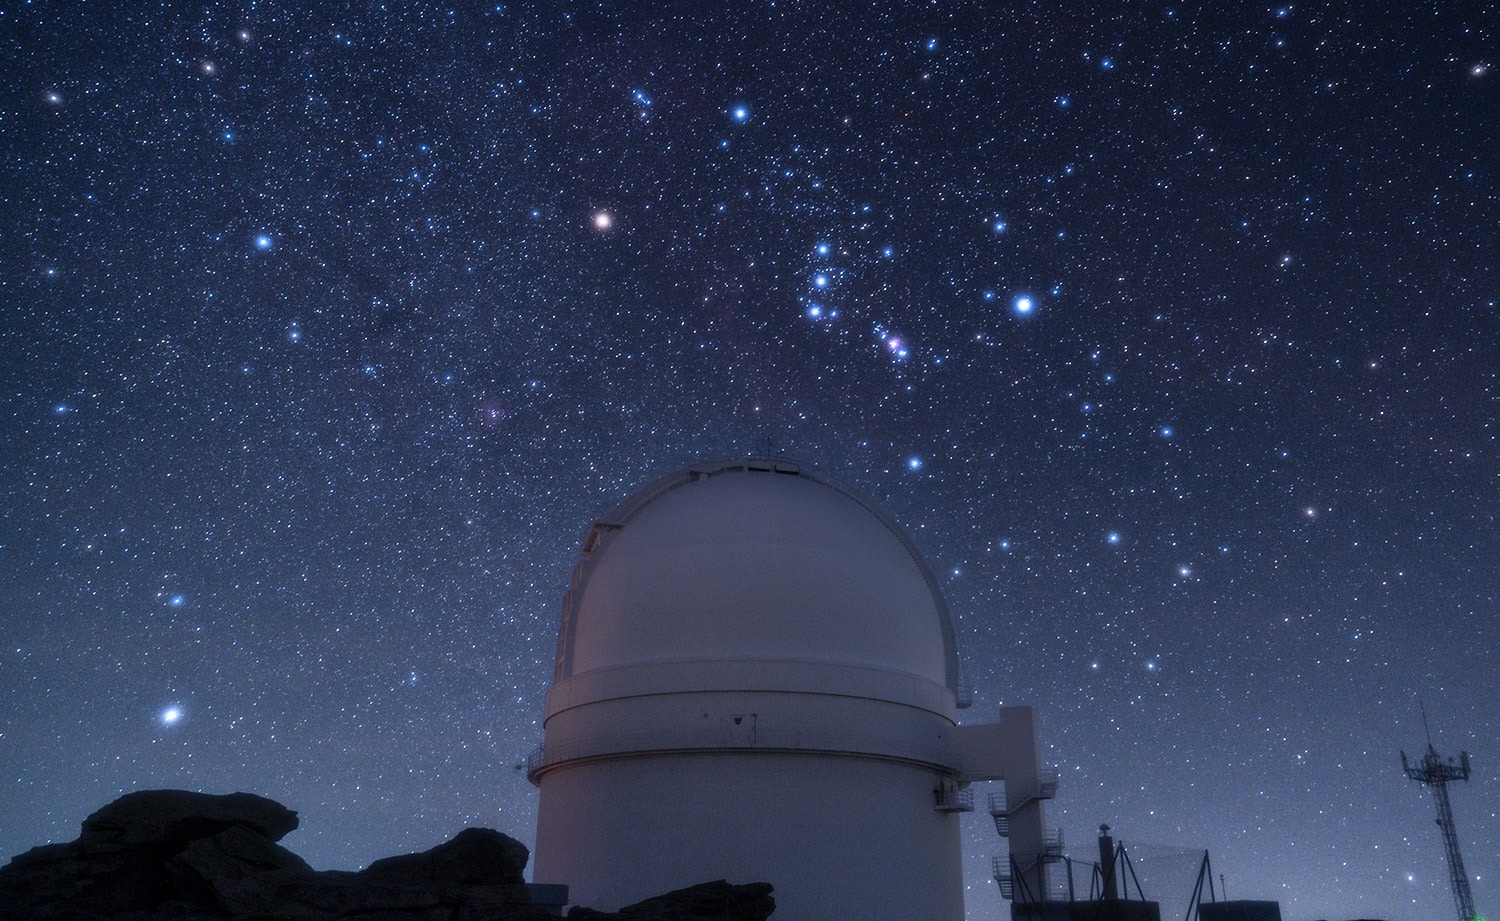 Cúpula de telescopio 3.5 metros de Calar Alto con la constelación de Orión